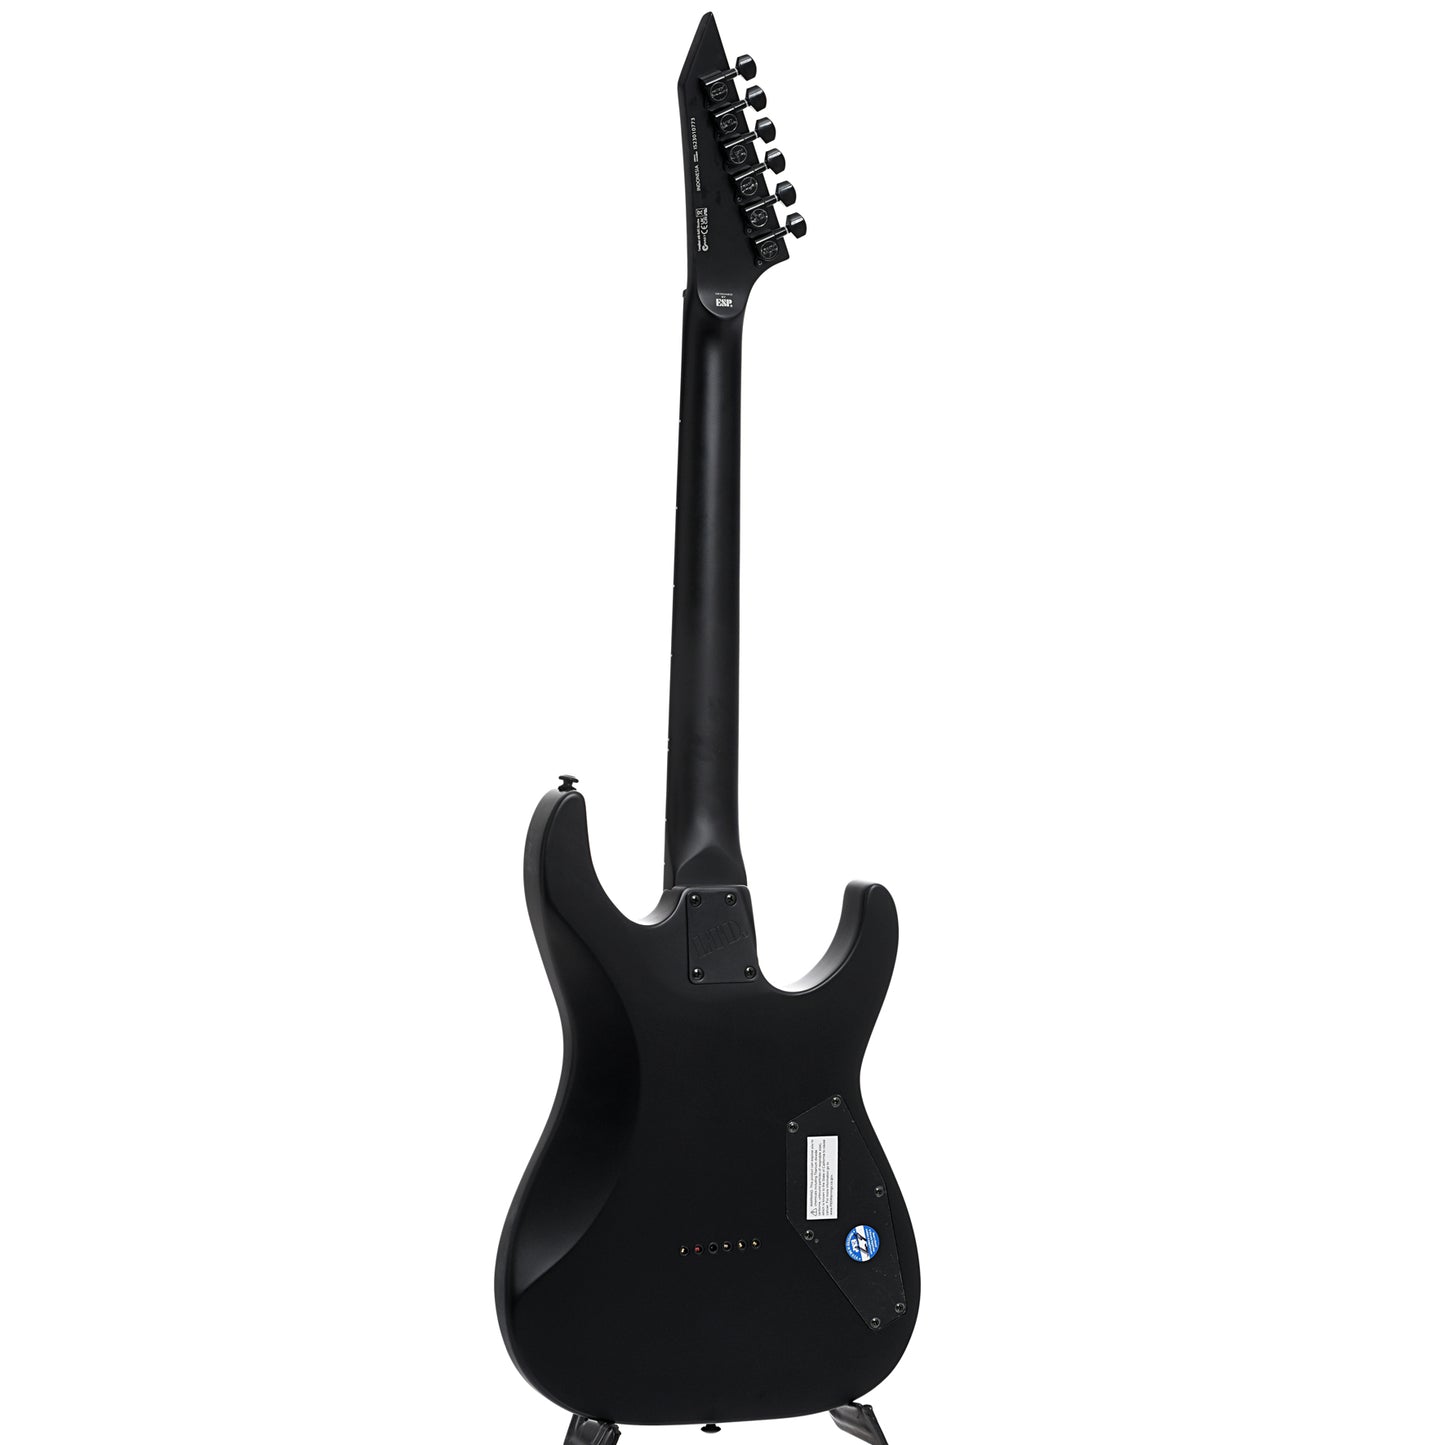 Full back and side of ESP LTD Left Handed M-201HT Electric Guitar, Black Satin